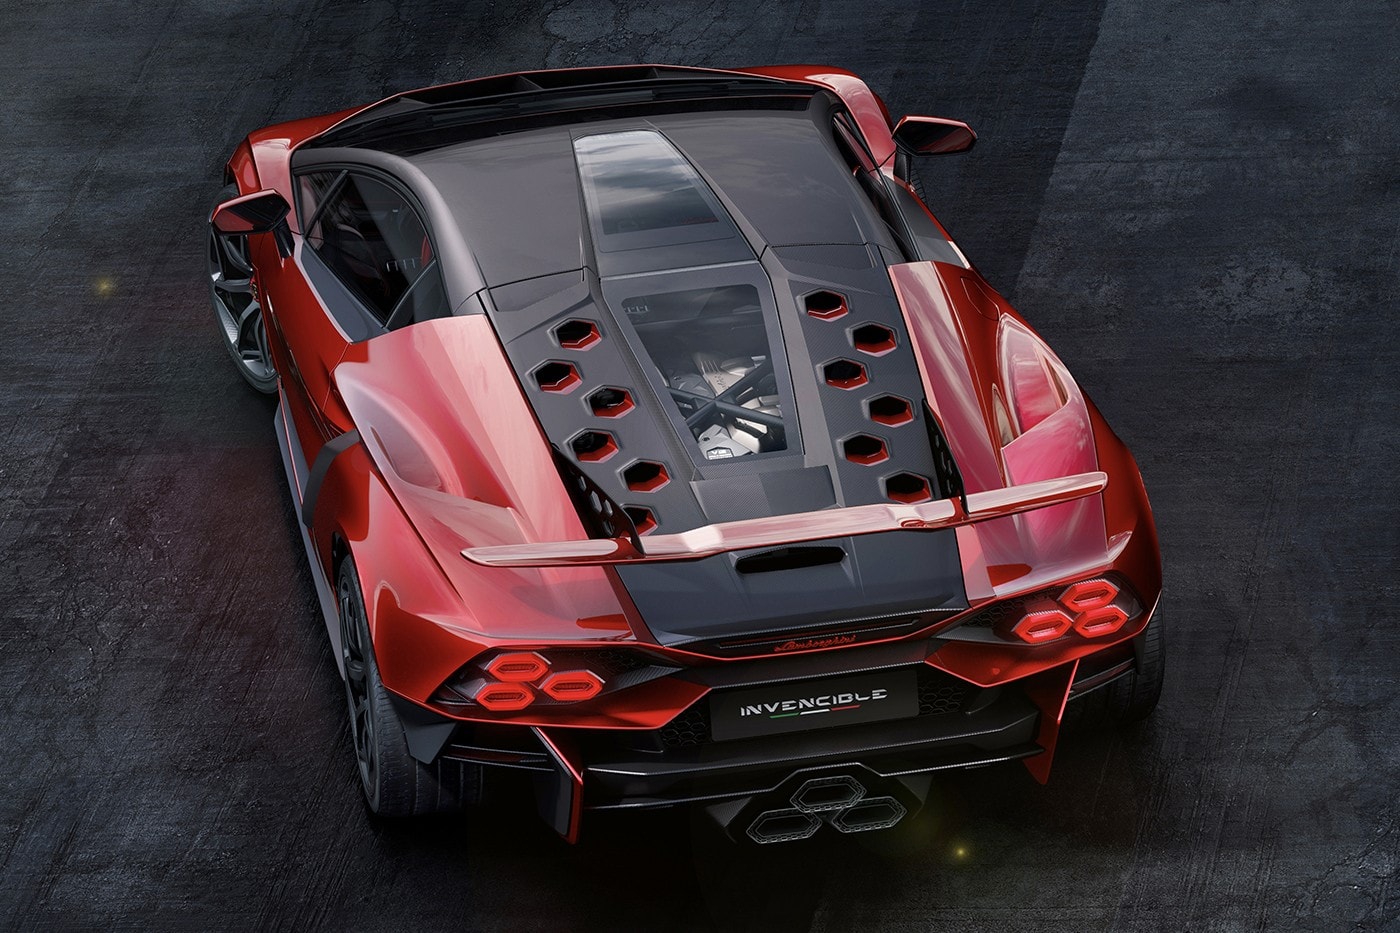 Lamborghini 正式發表全球限量一輛 V12 引擎 Invencible 與 Autentica 超跑